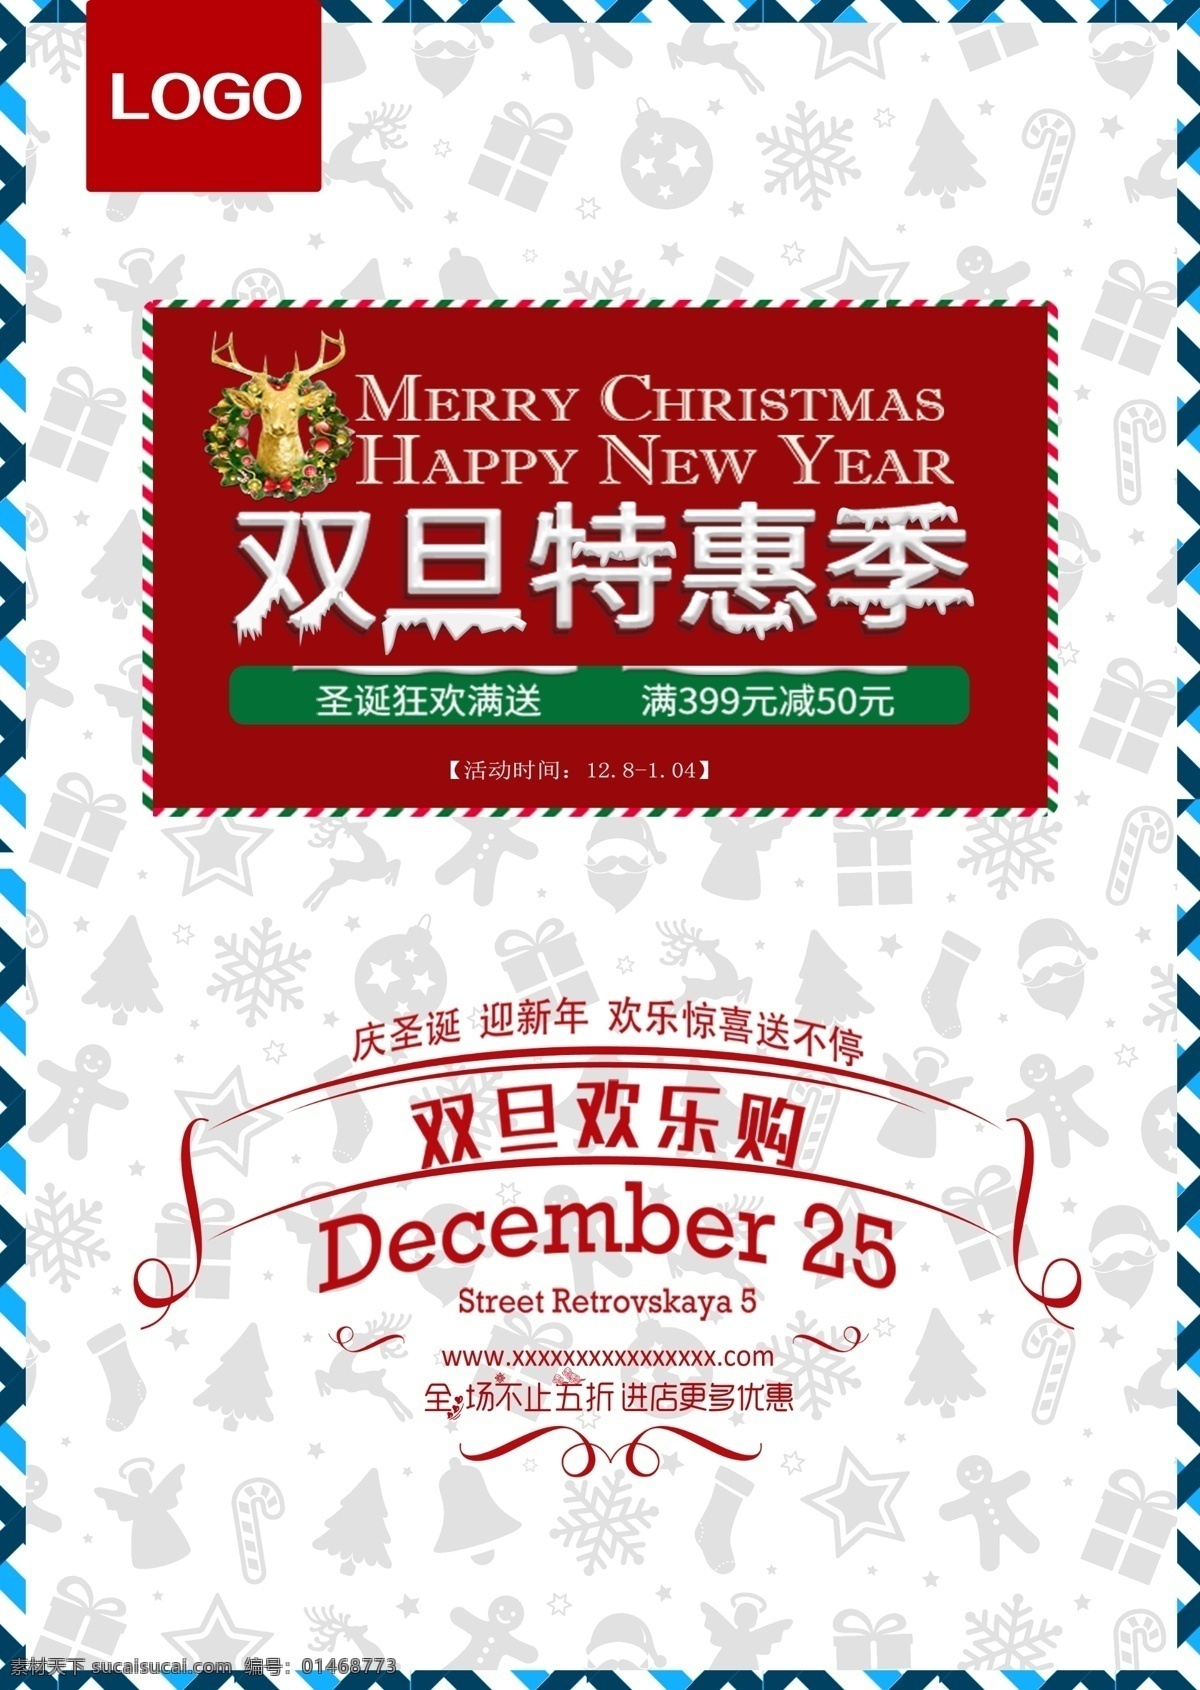 双 旦 特惠 季 喷绘 海报 模板 红色 圣诞 双旦欢乐购 双旦节 双旦特惠季 元旦